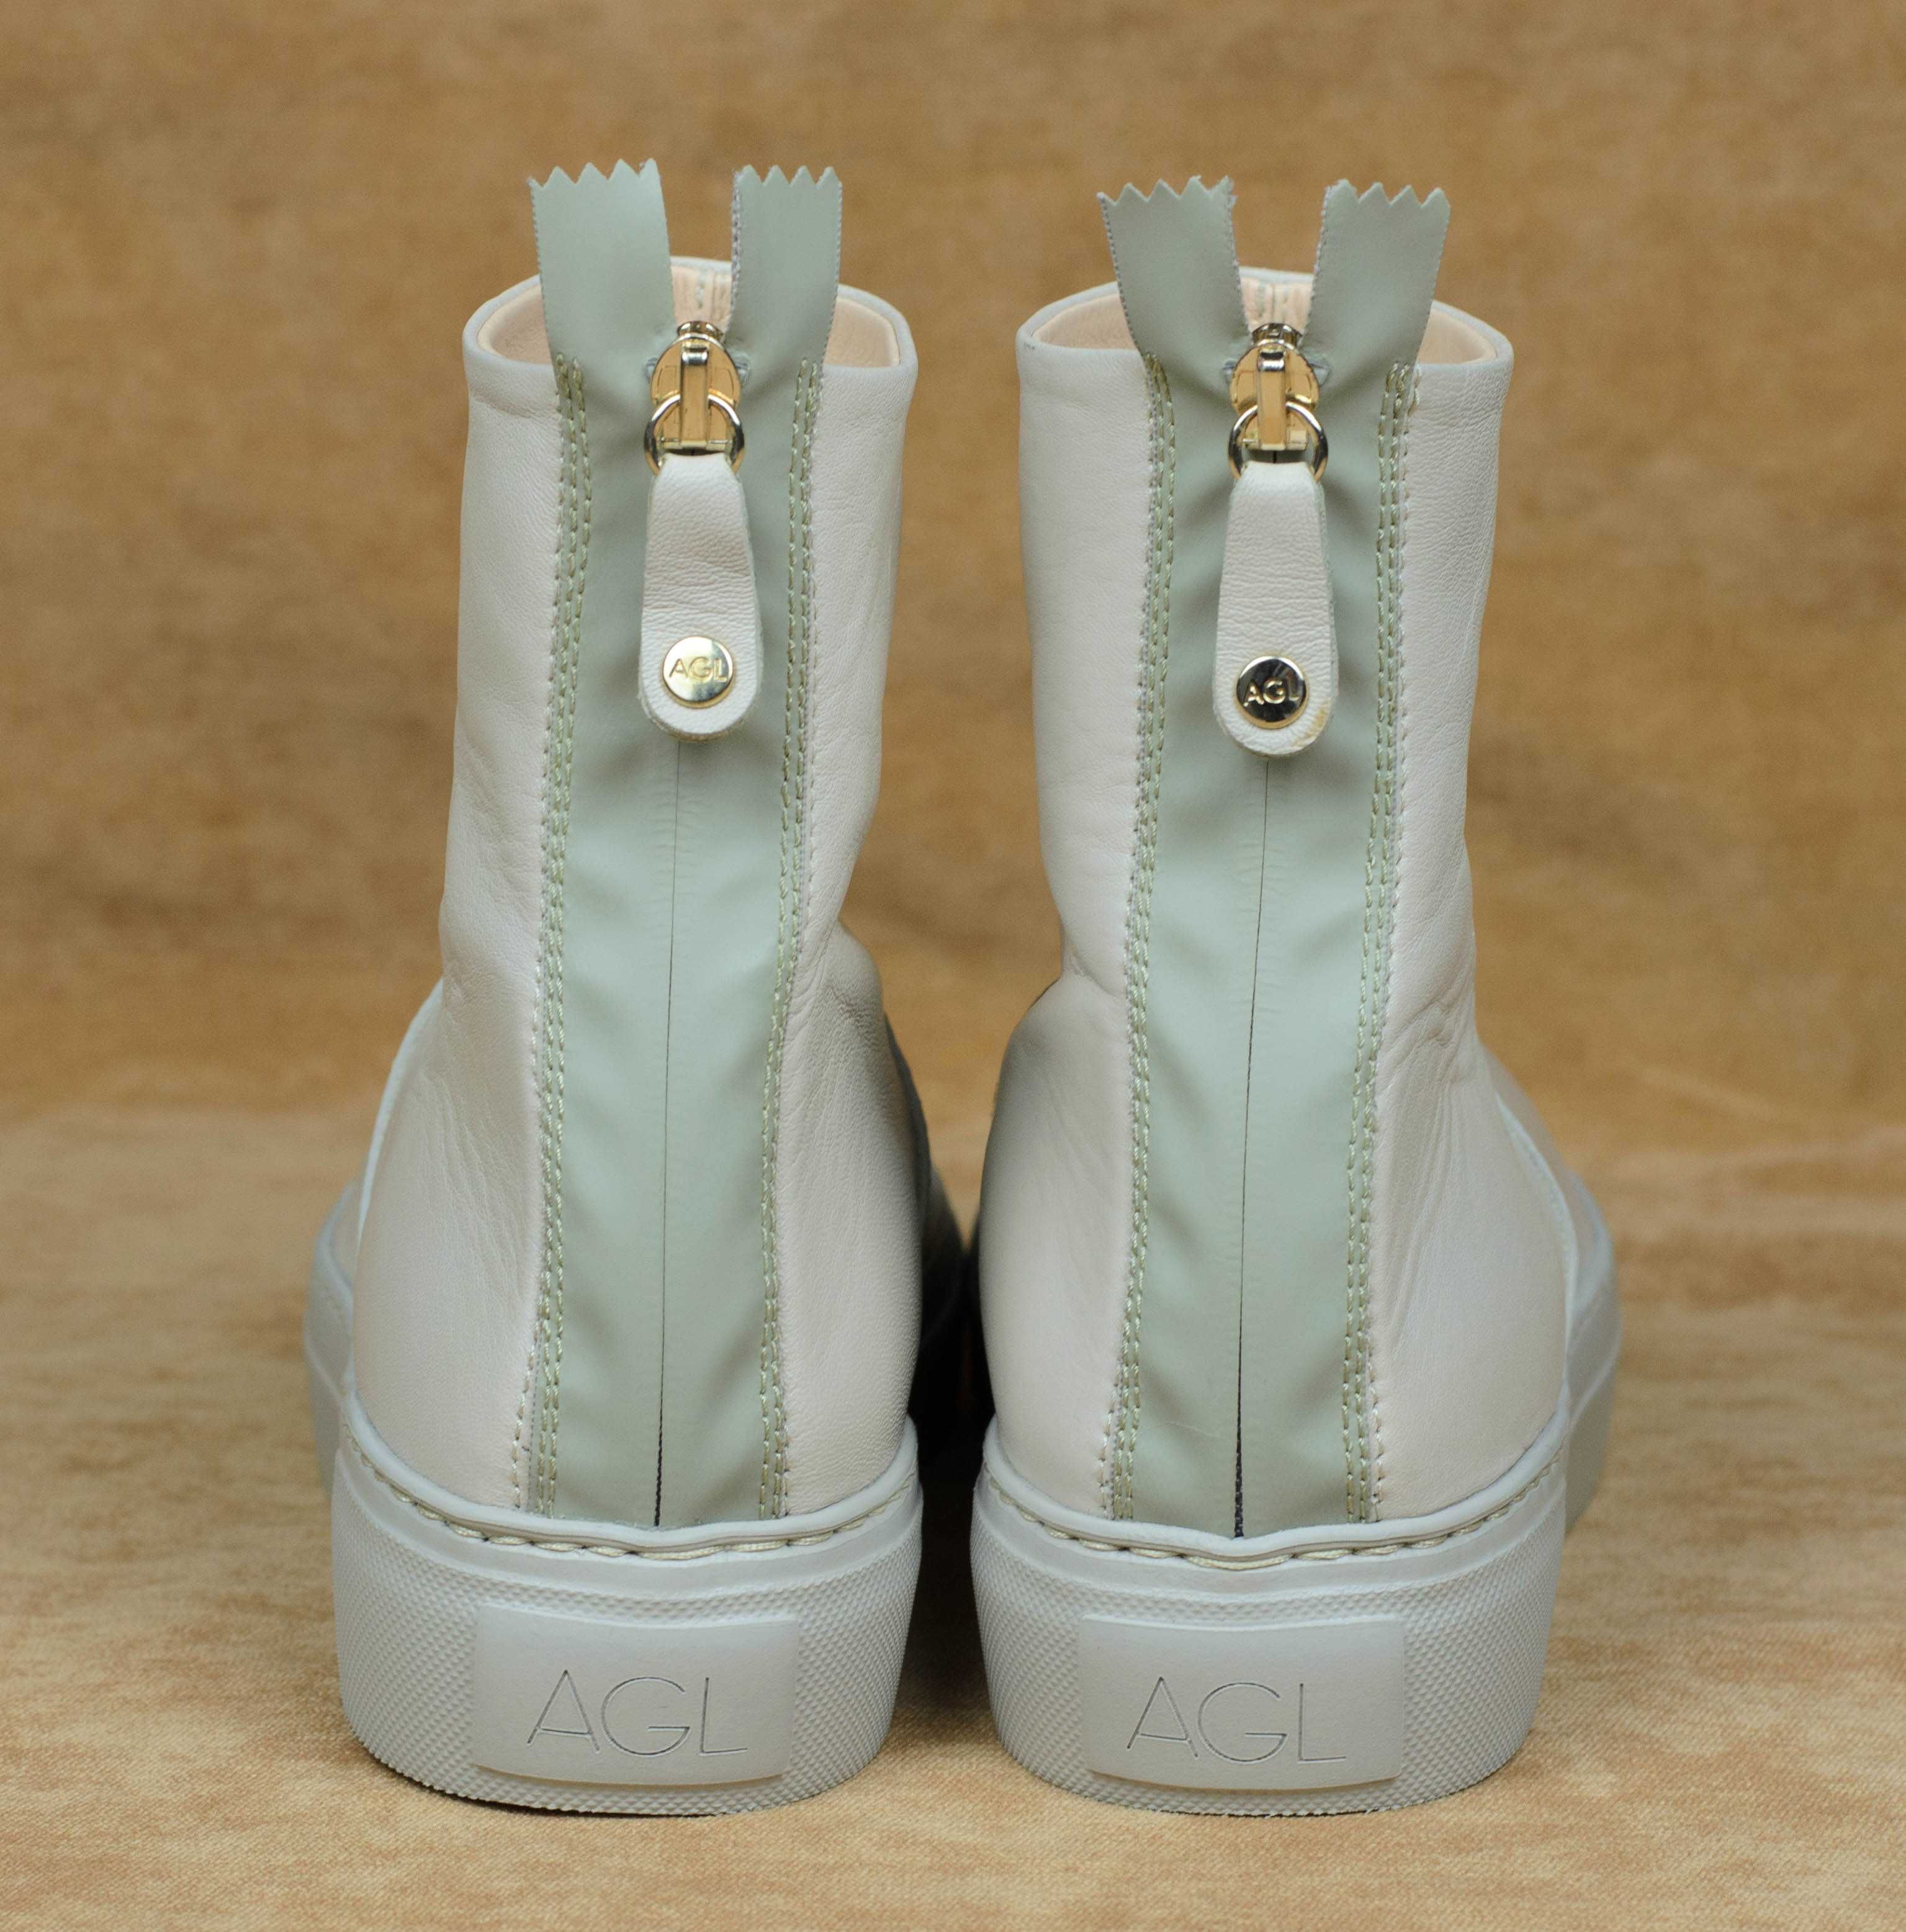 Кожаные итальянские ботинки кроссовки AGL Meghan Boots D925503 разм 39